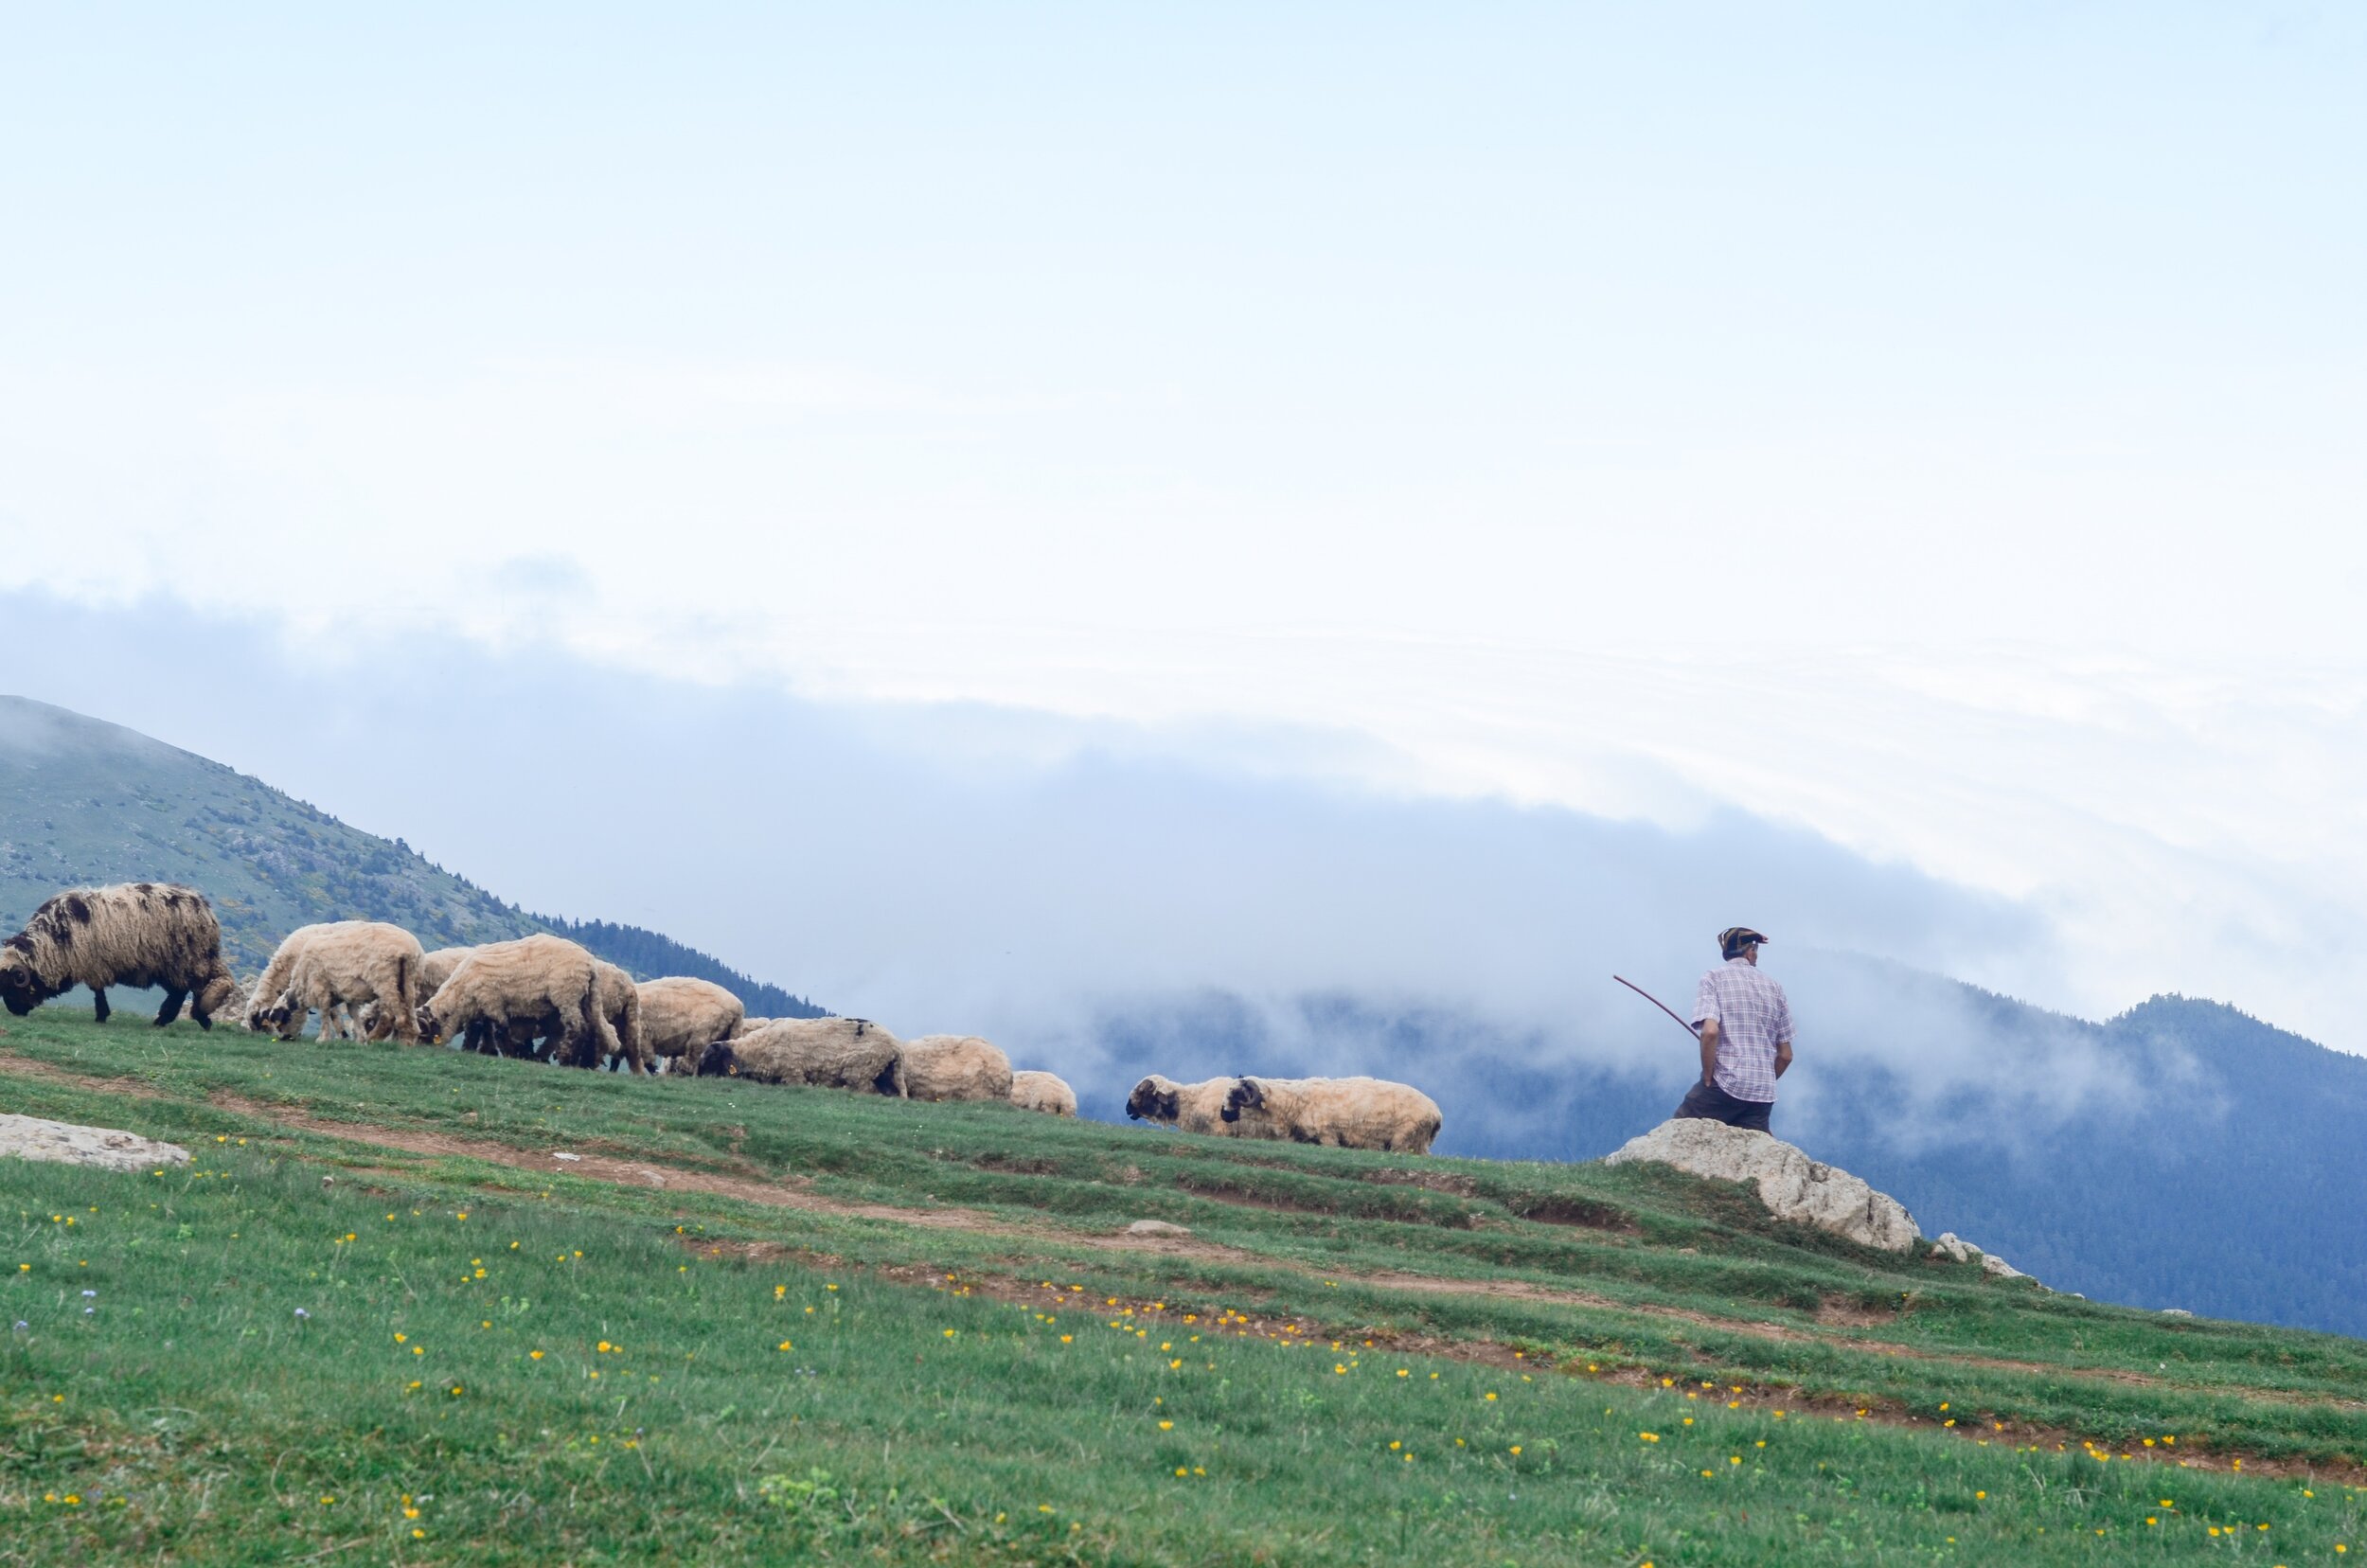 Shepherd in field with sheep